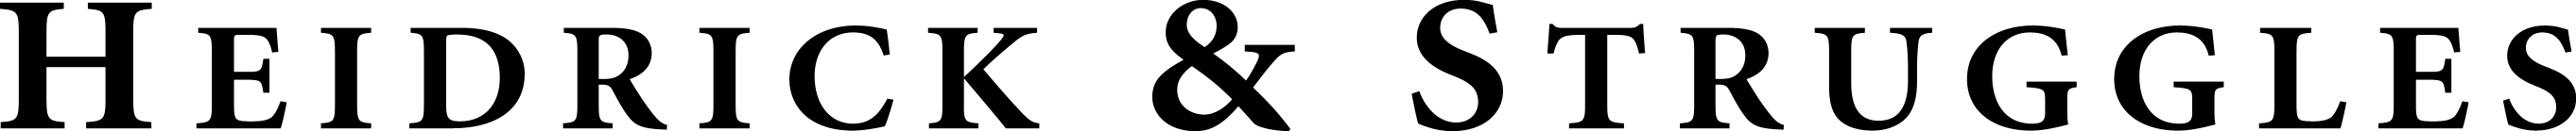 Heidrick & Struggles corporate logo